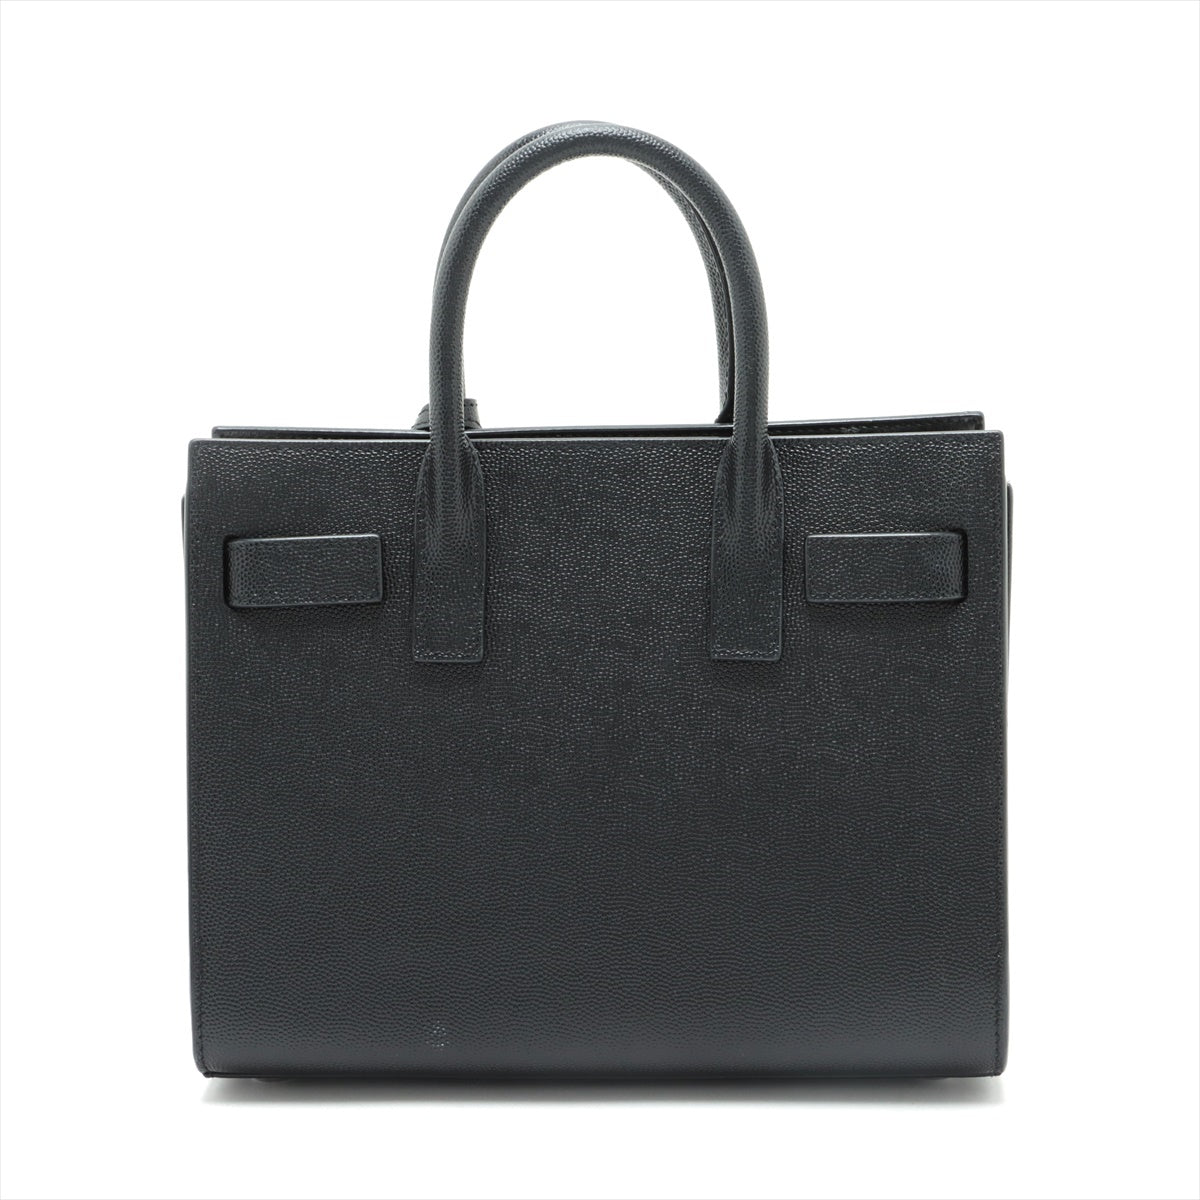 Saint Laurent Paris Sac de Jour Nano Leather 2way handbag Black 392035